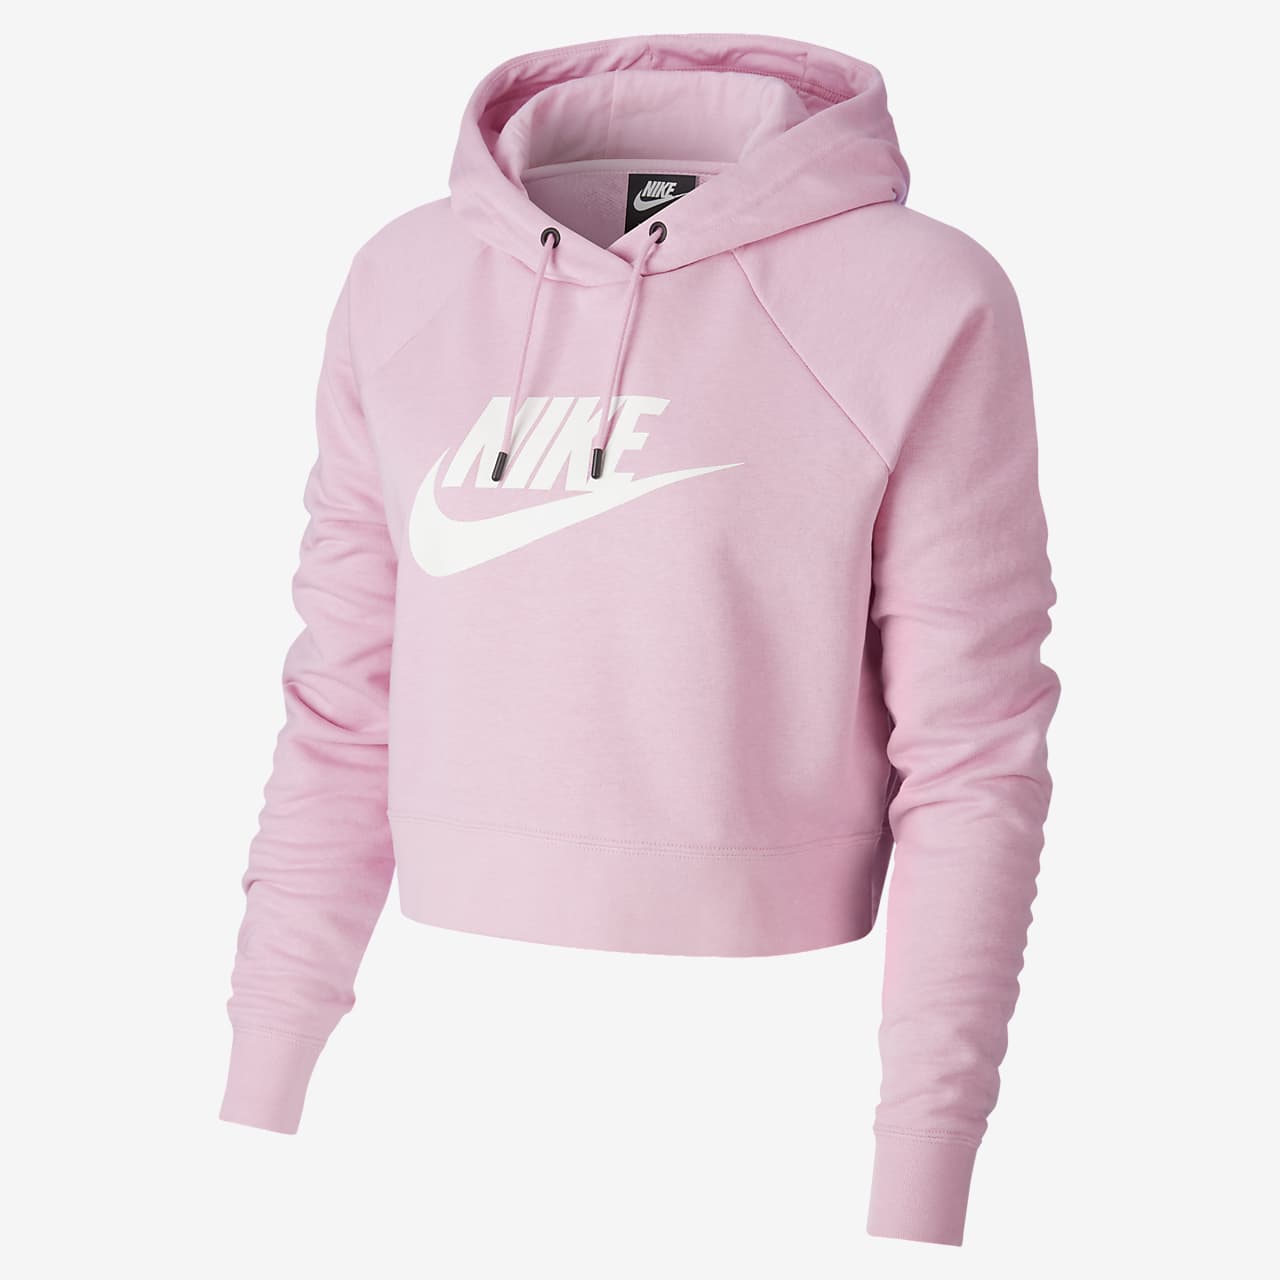 nike cropped hoodie pink 